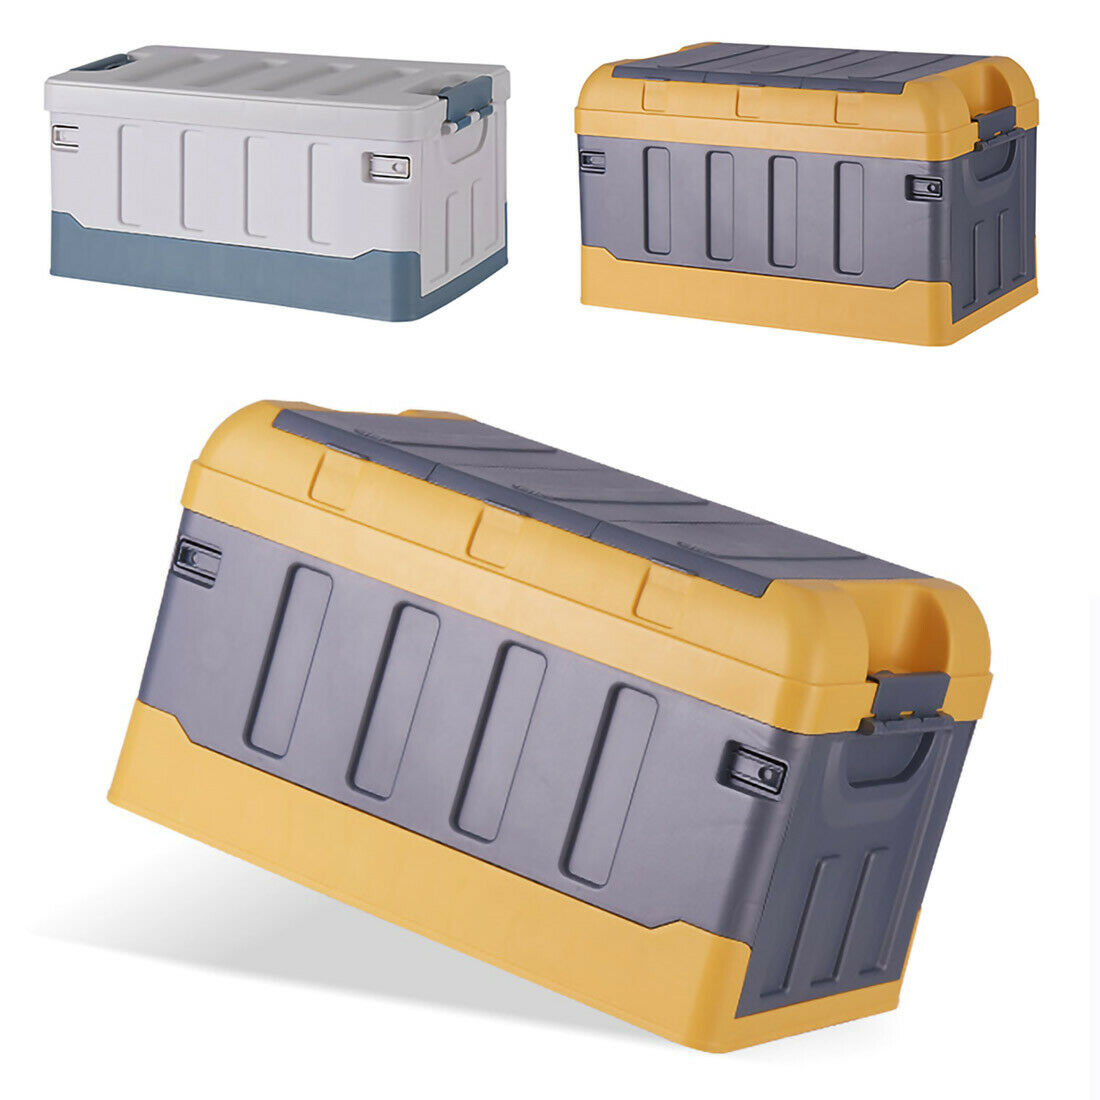 Premium faltbare Aufbewahrungsbox mit Deckel Faltbox Box Klapp Kiste KFZ Reise Gelb Standard mit flachem Deckel